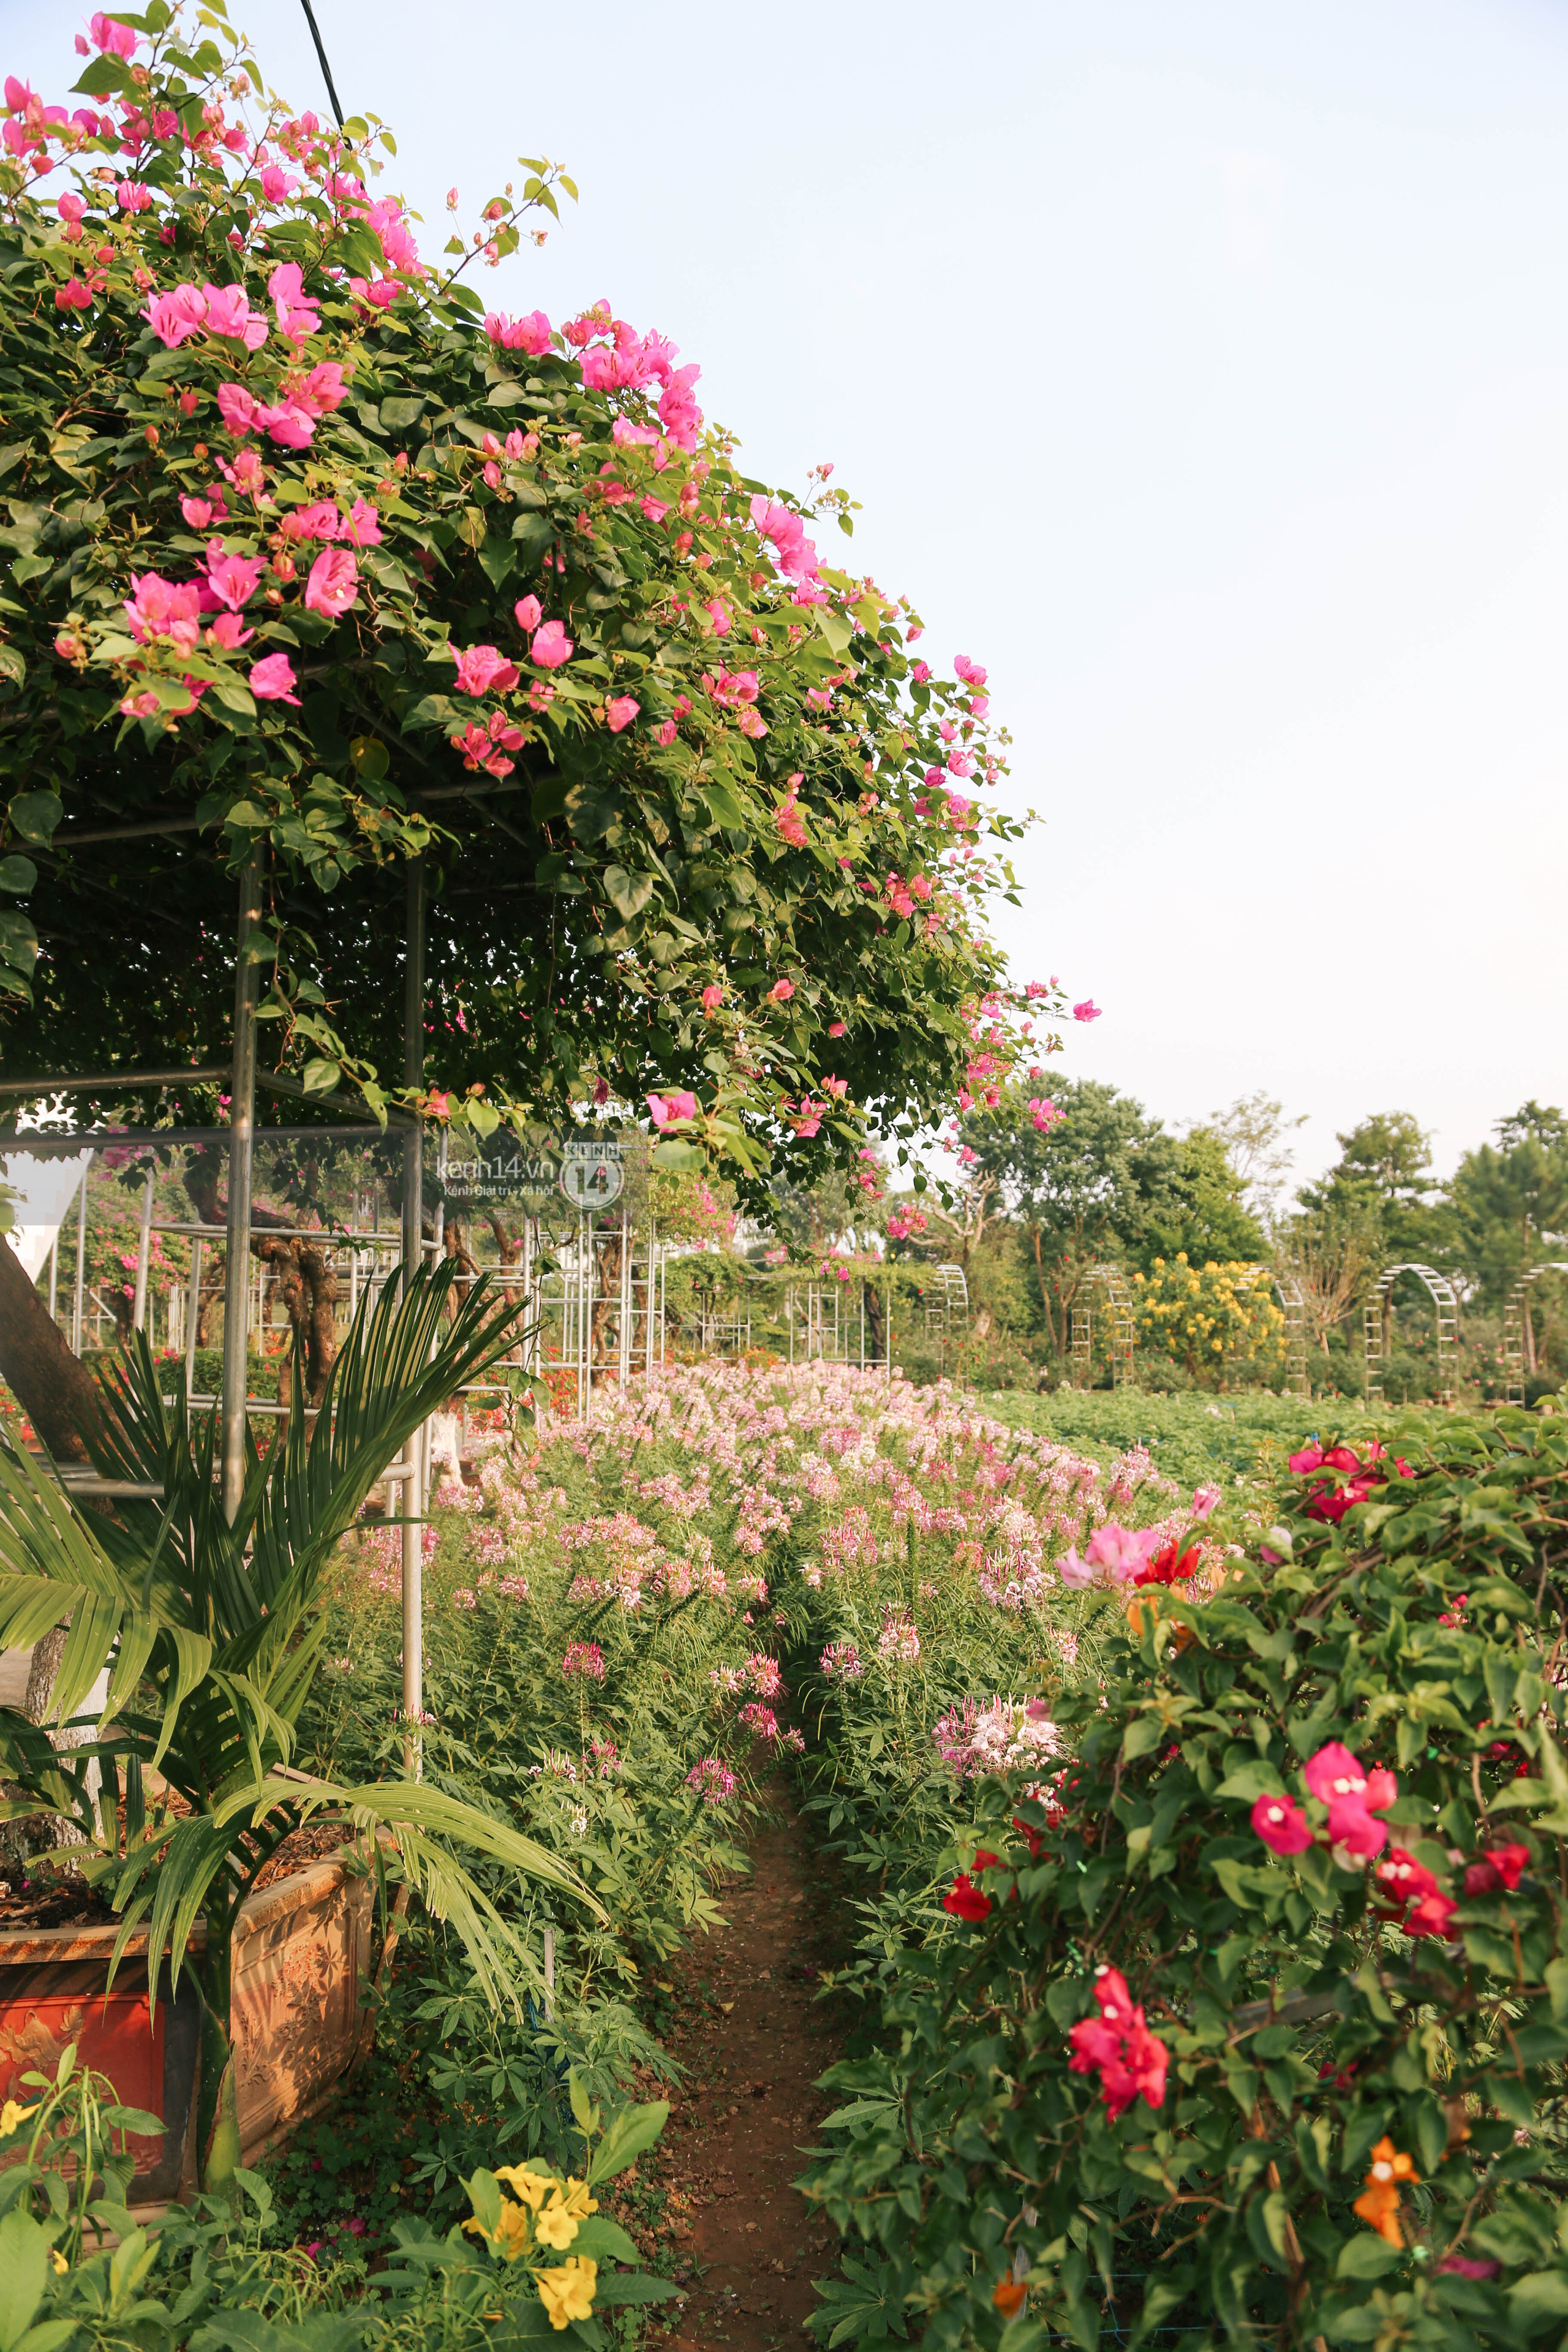 Trường ĐH rộng gần 200ha có vườn hoa đẹp nhất mùa đông Hà Nội, nhiều góc sống ảo cực chill chỉ với 25K - Ảnh 15.